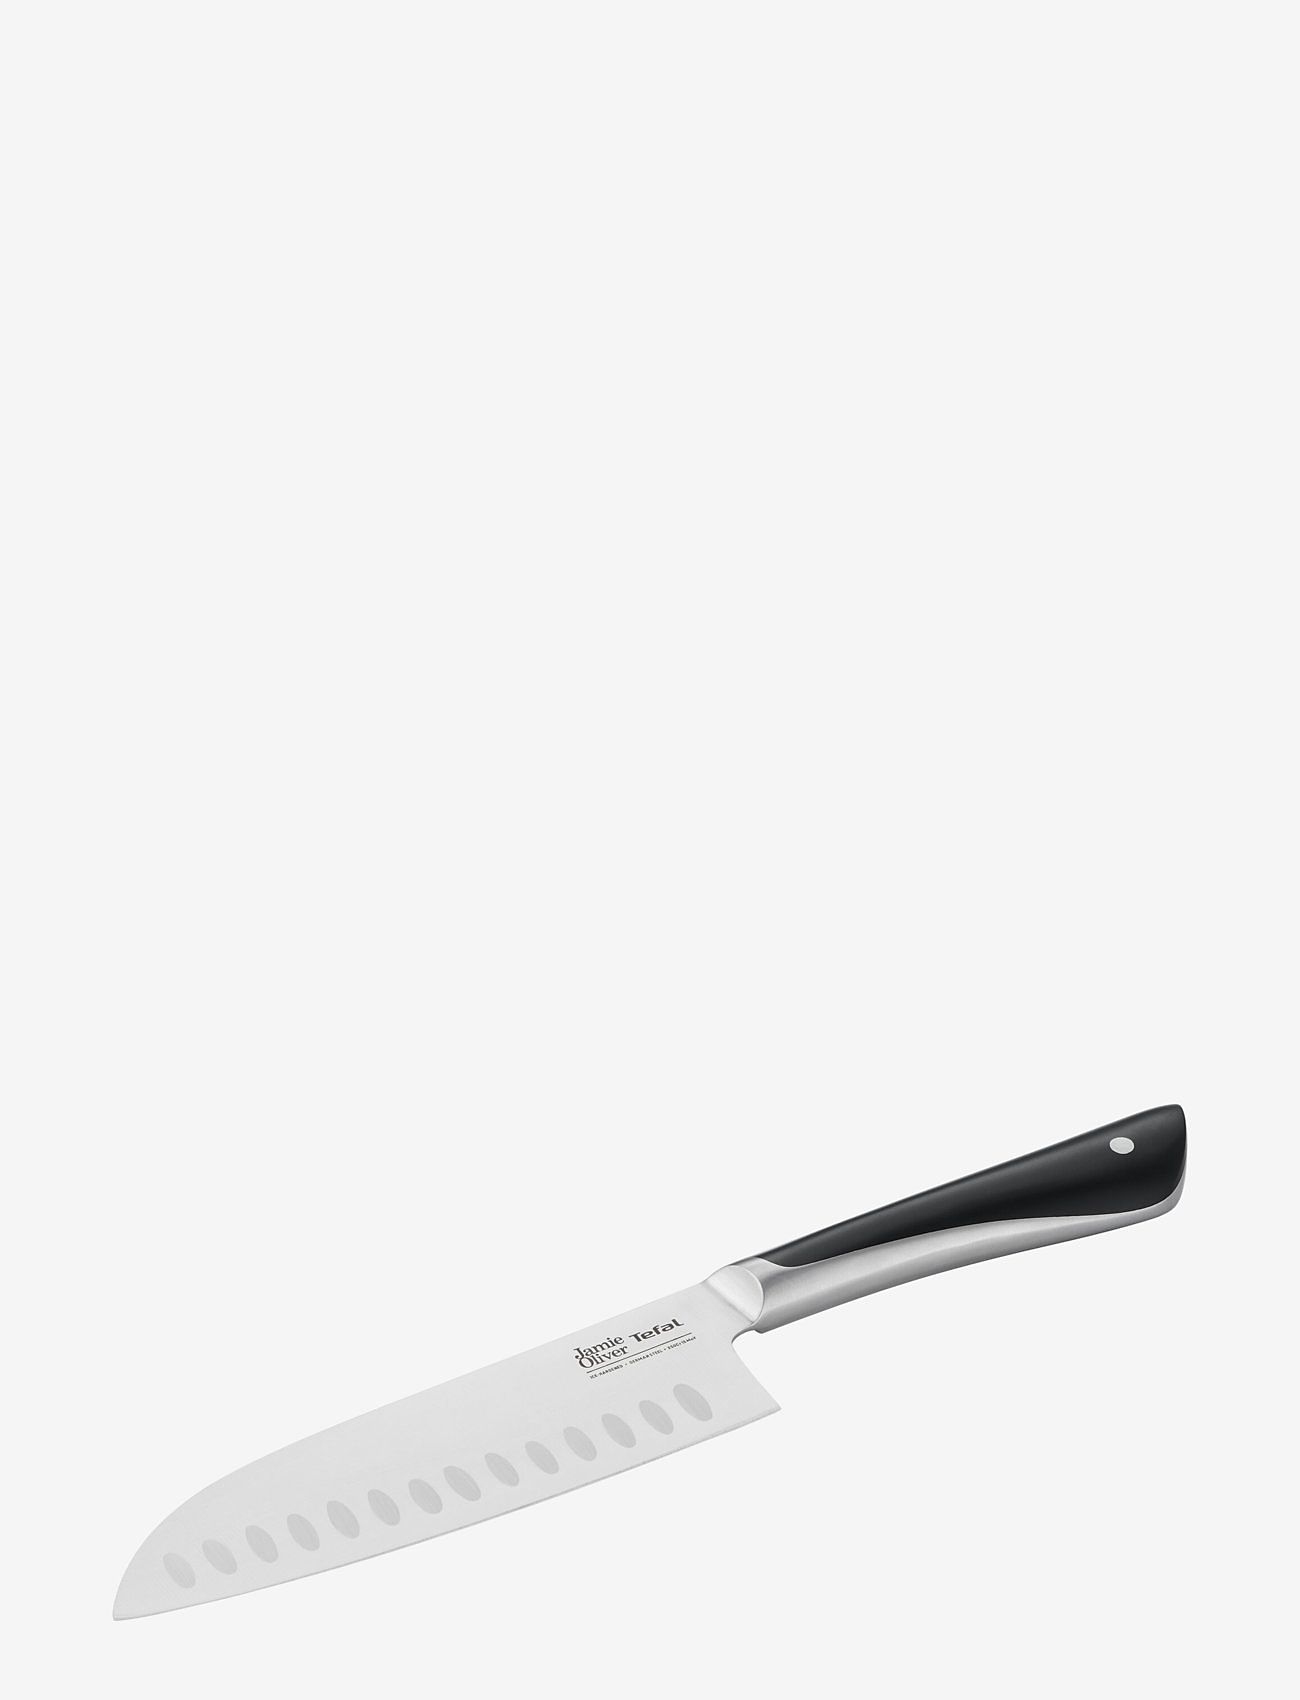 Jamie Oliver Tefal - Jamie Oliver Knife Santoku 16,5 cm - najniższe ceny - stainless steel - 1